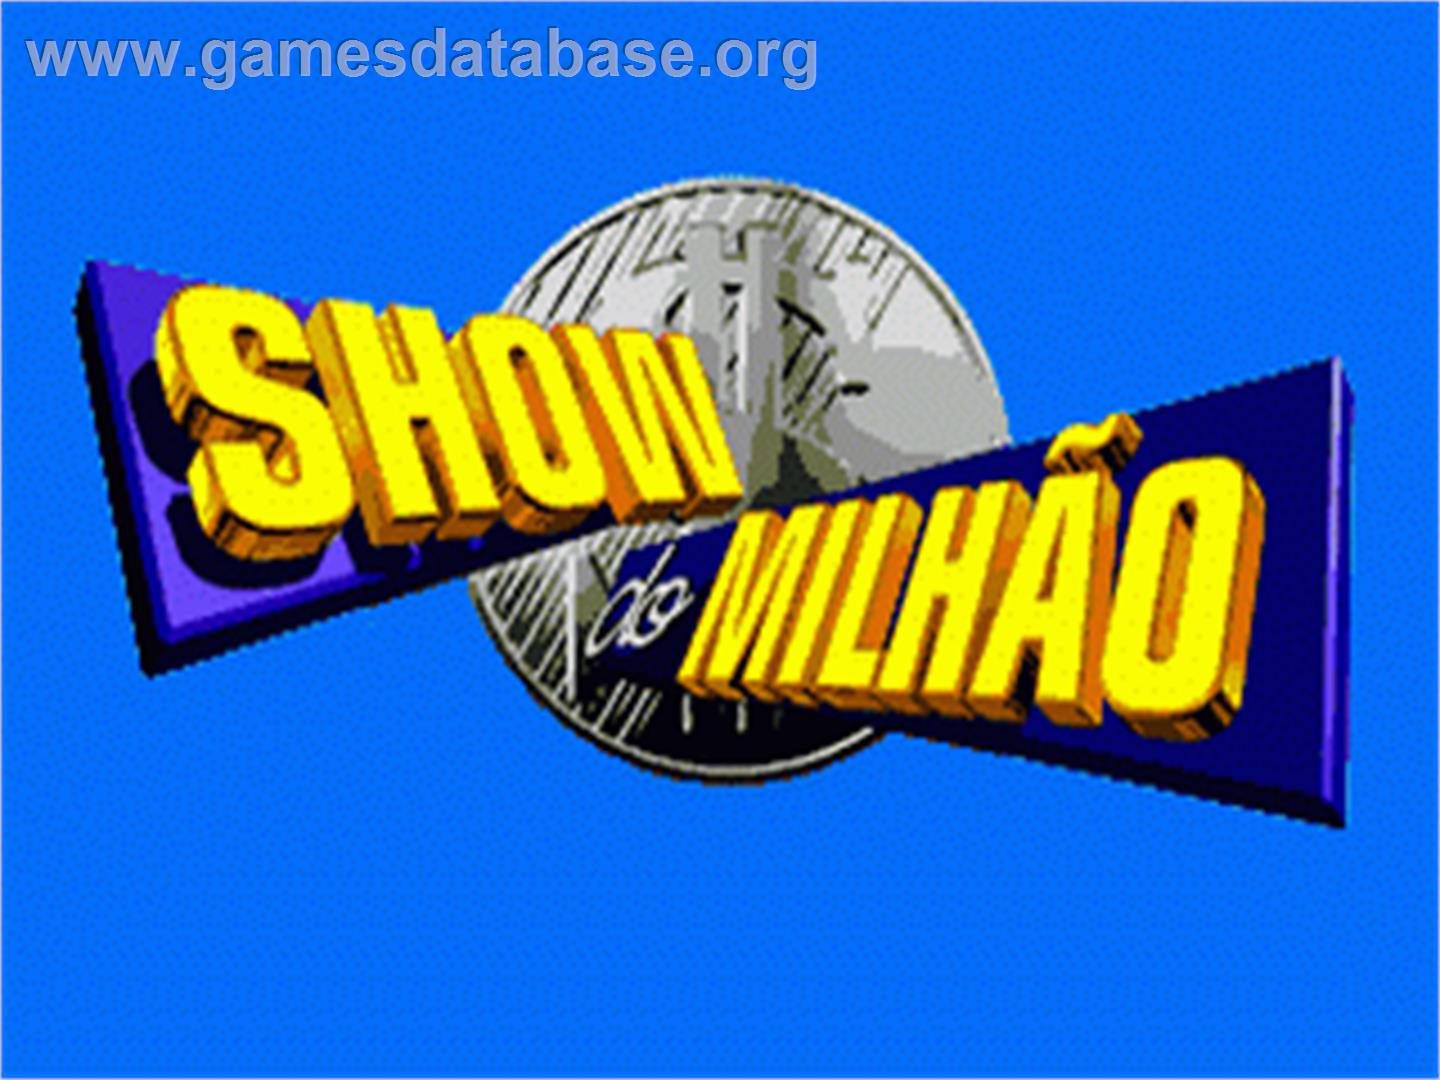 Show do Milhão - Sega Genesis - Artwork - Title Screen